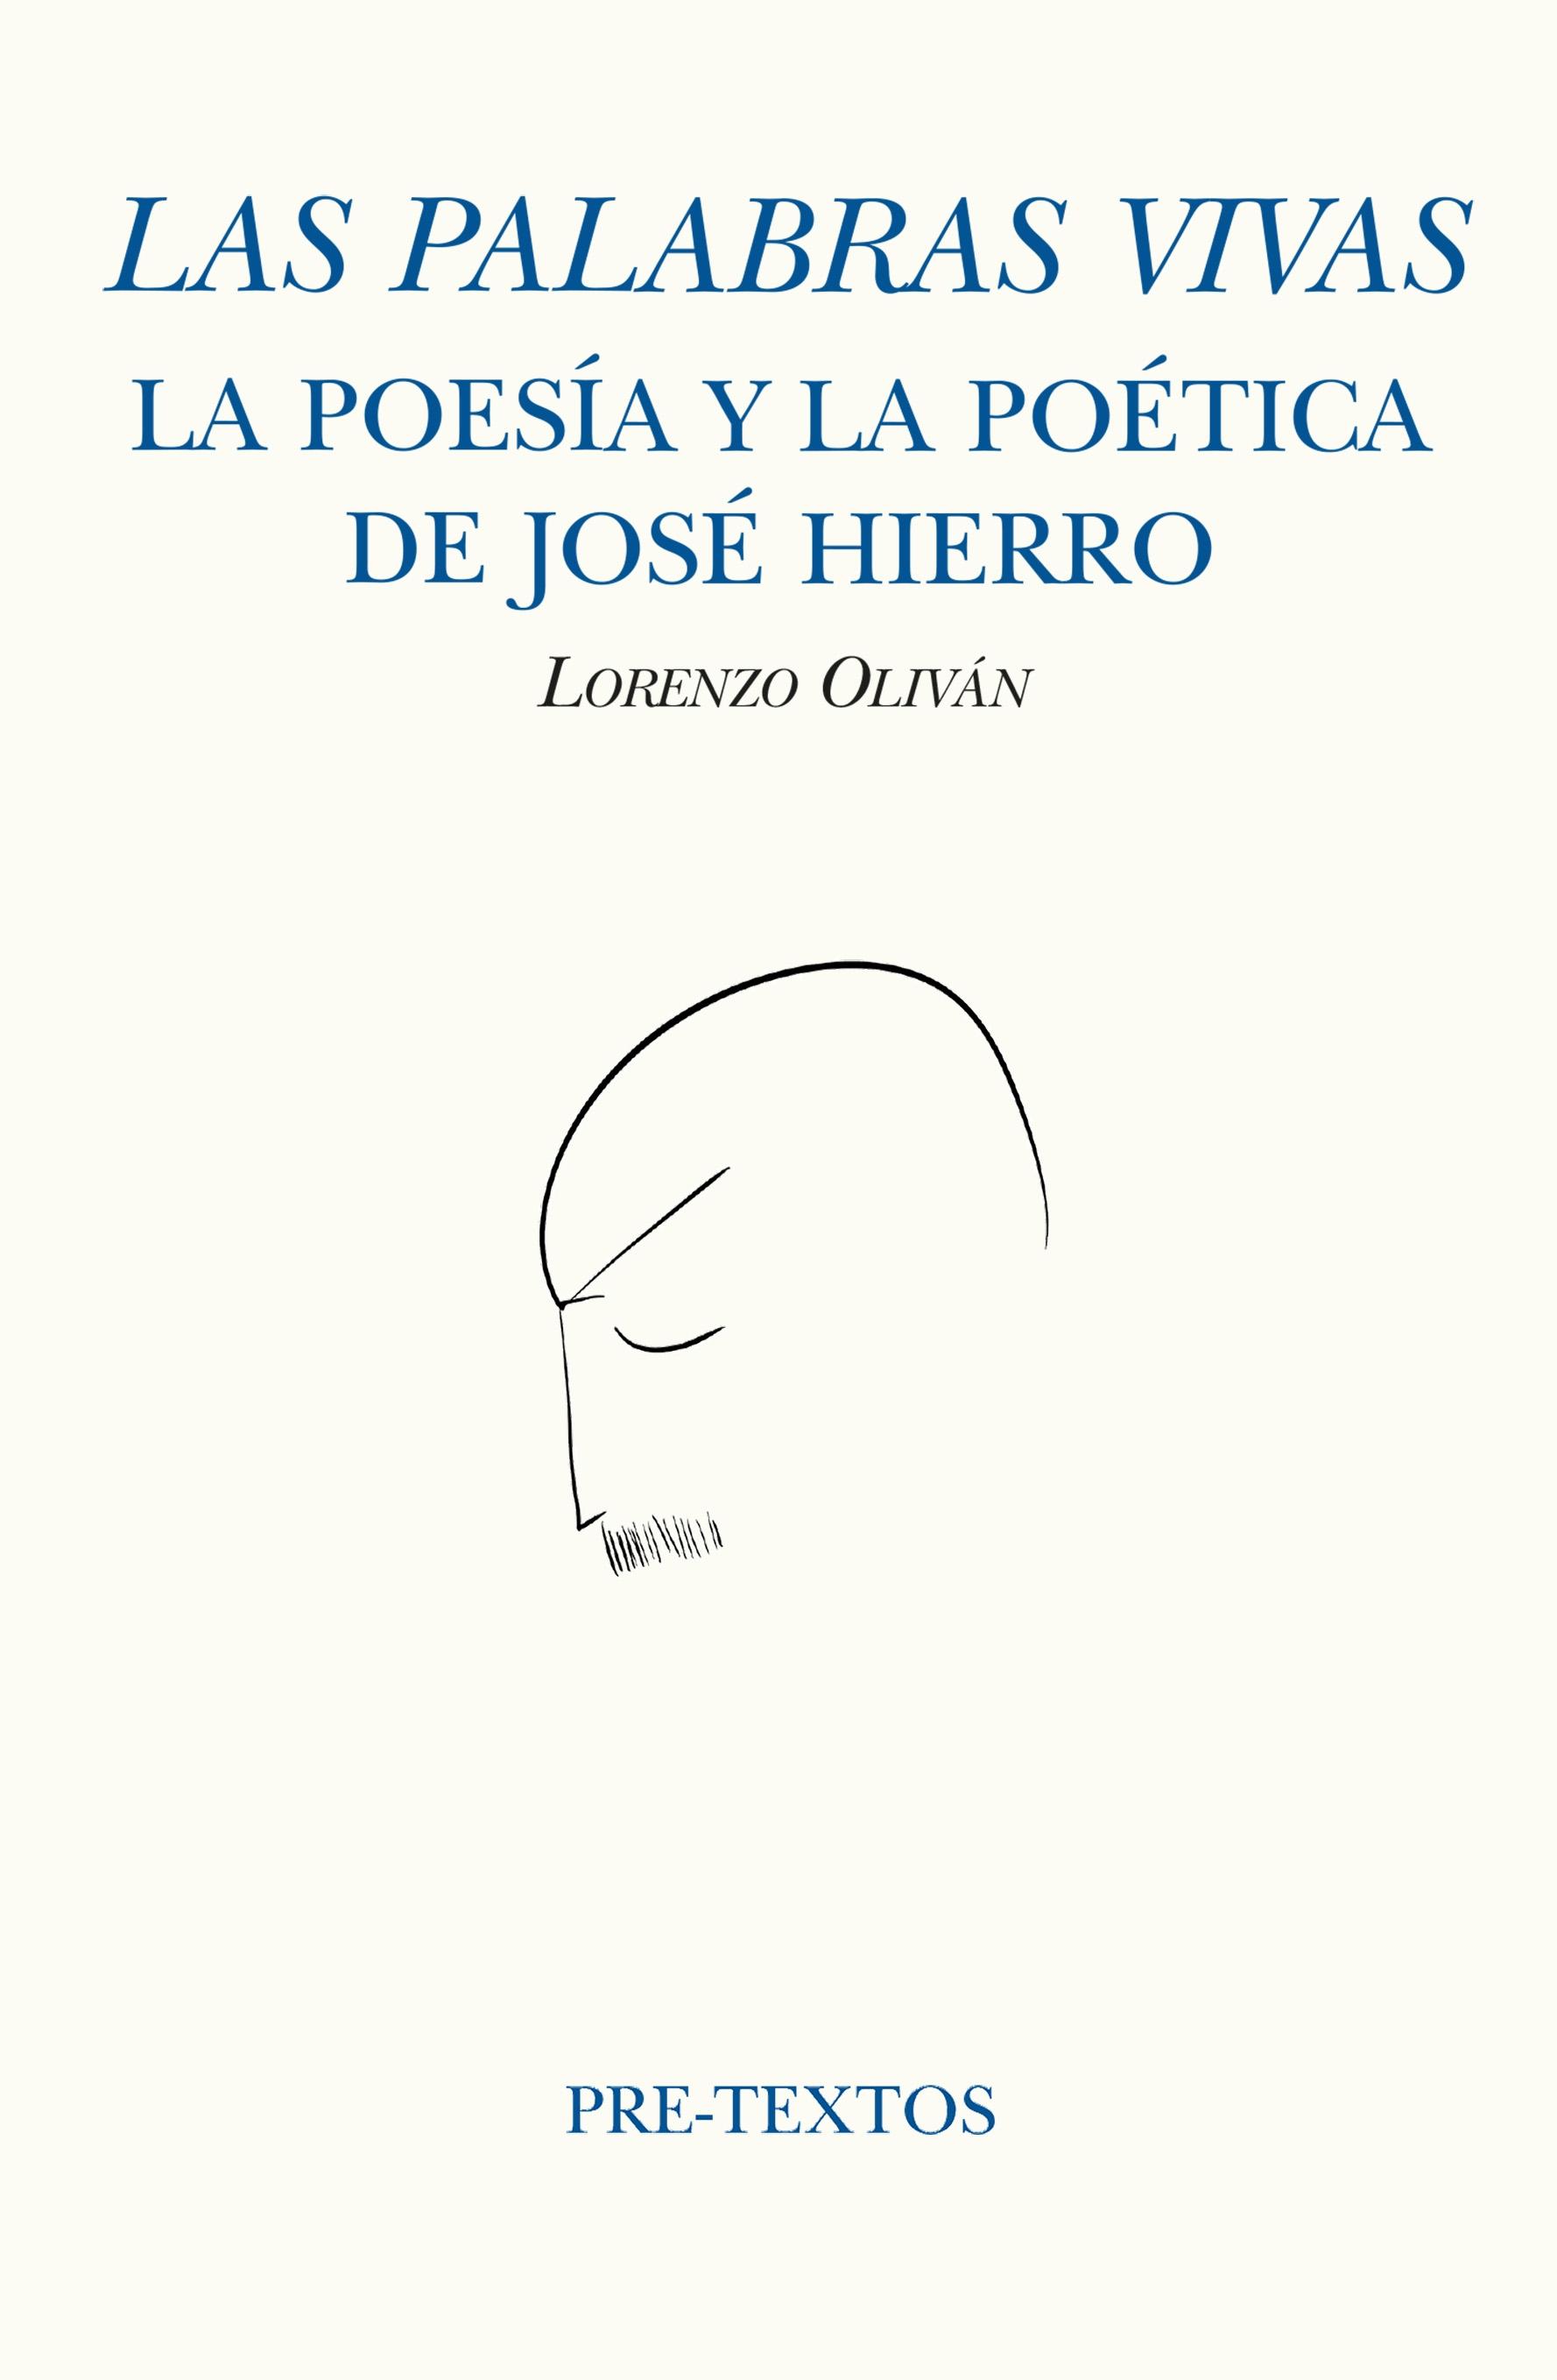 Las Palabras Vivas "La Poesía y la Poética de José Hierro". 